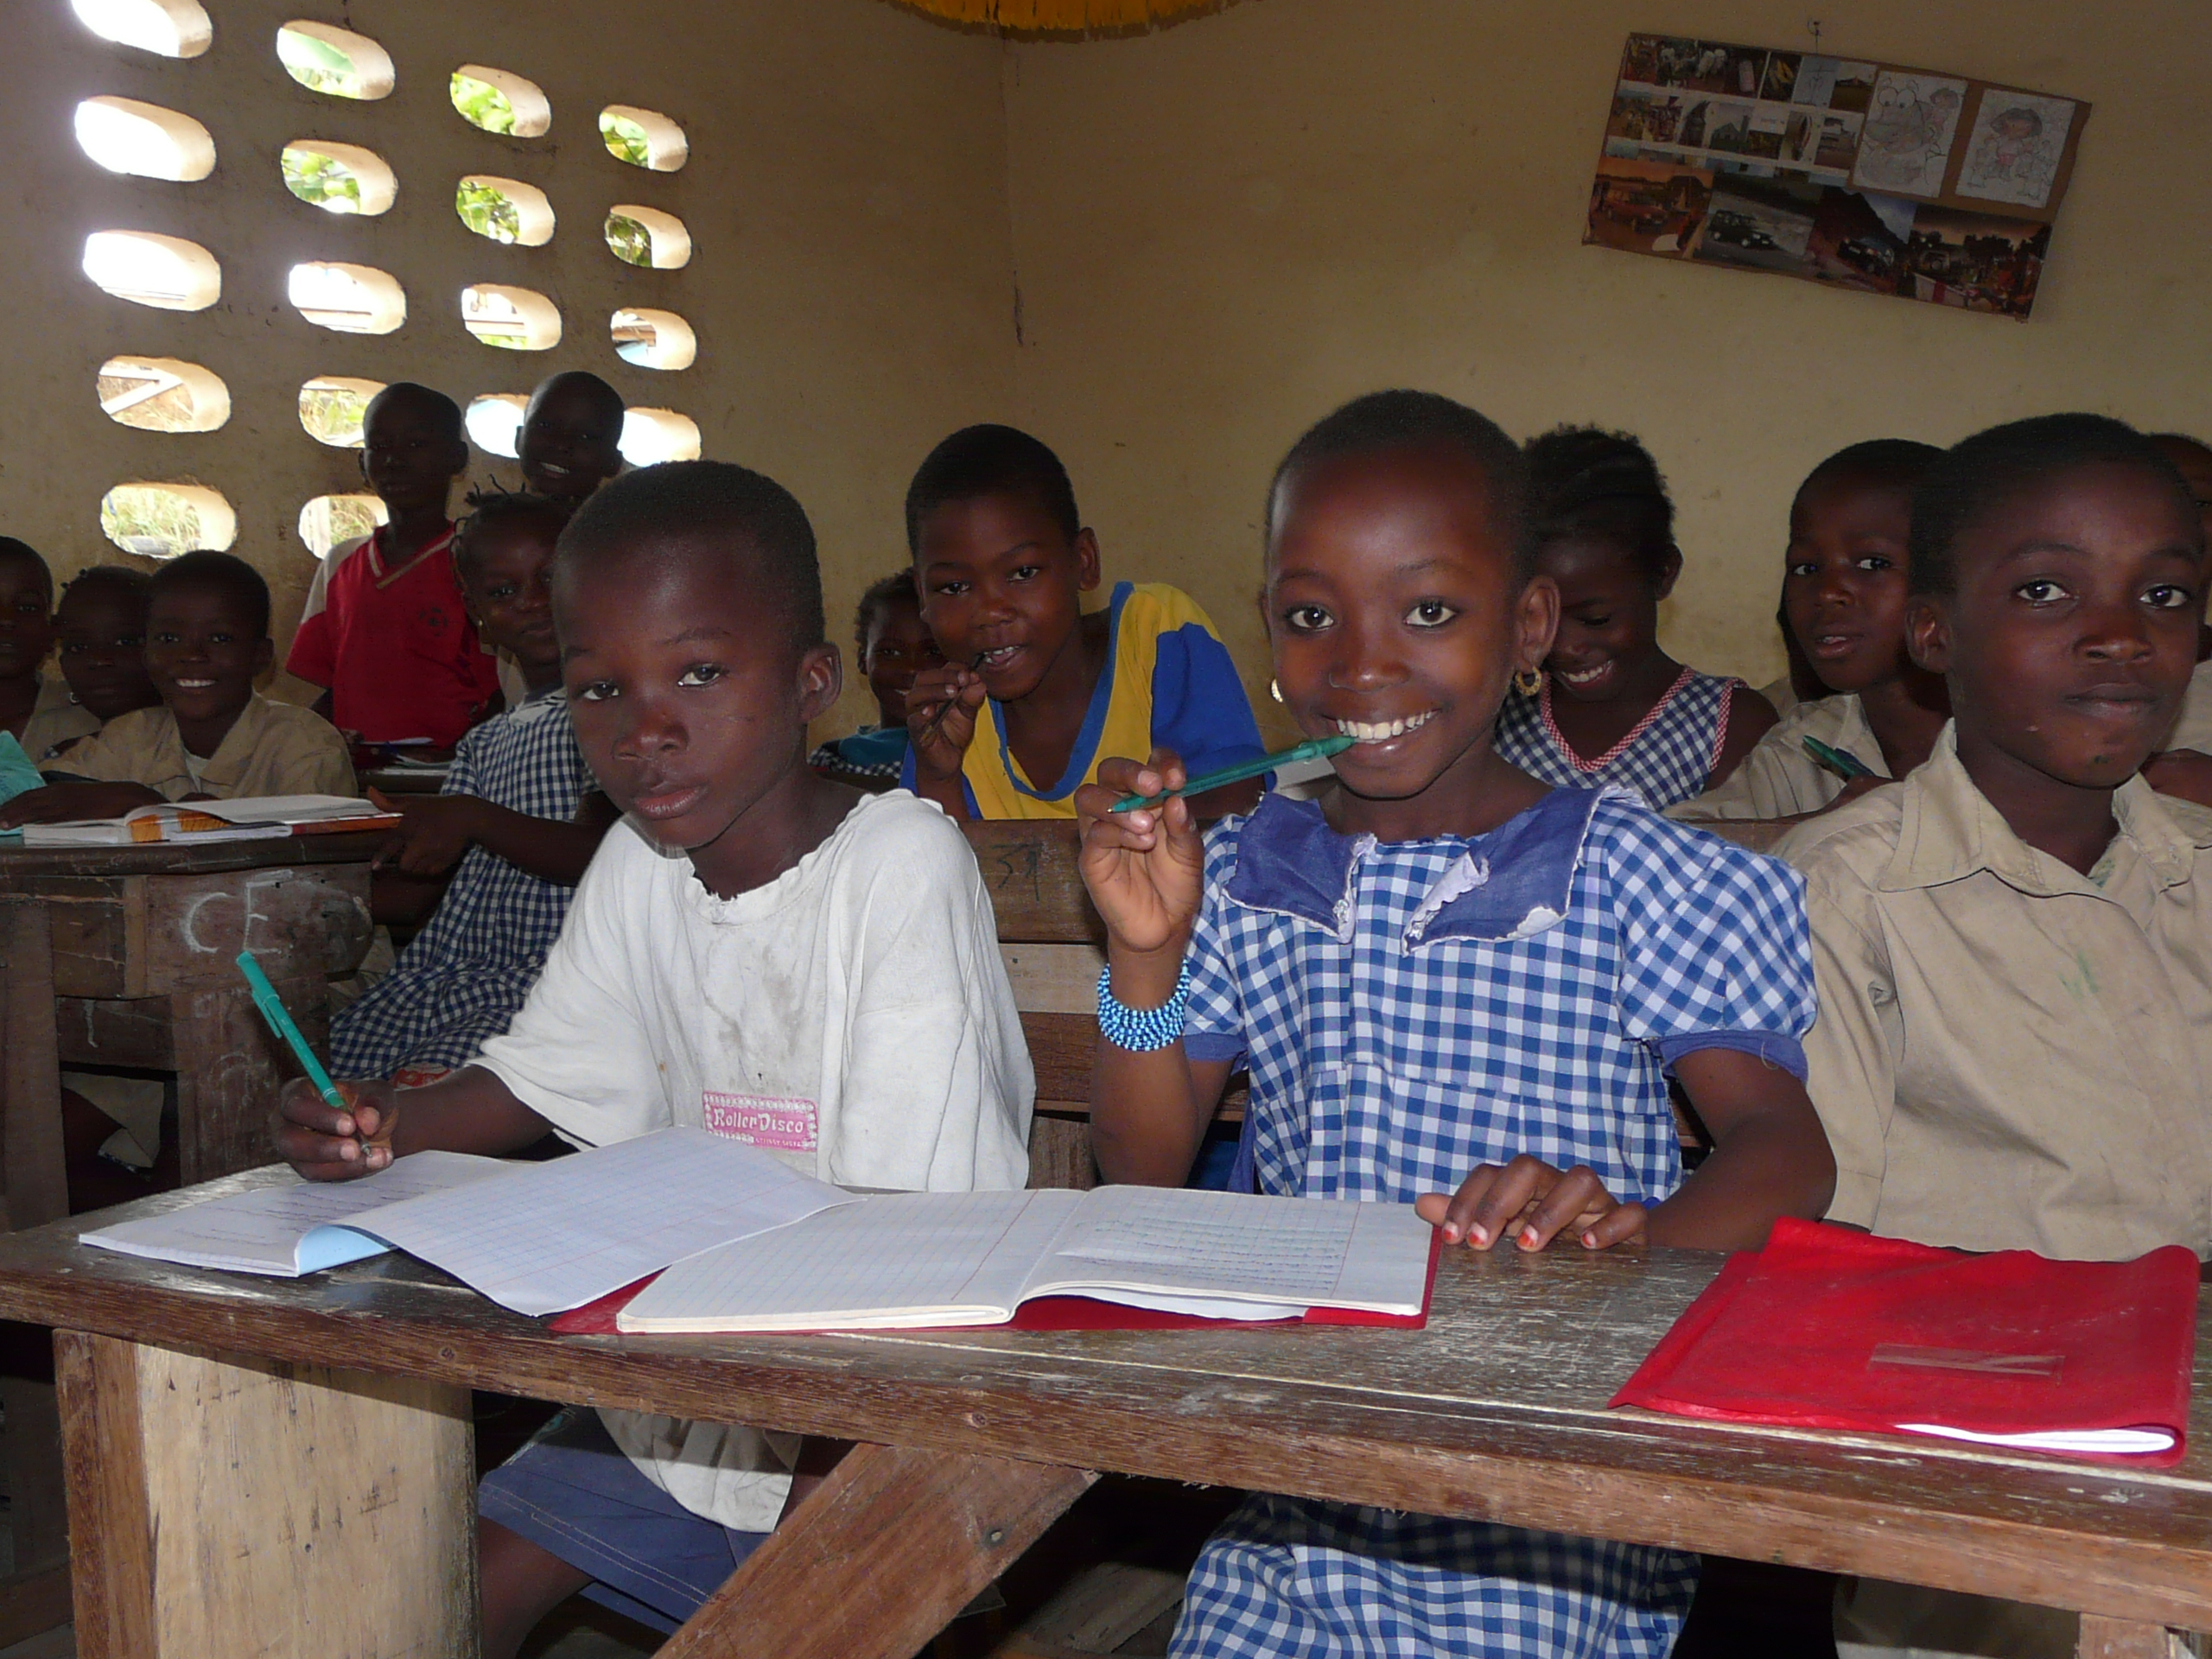 Cote d'Ivoire – Les TIC bientôt enseignés à l’école primaire